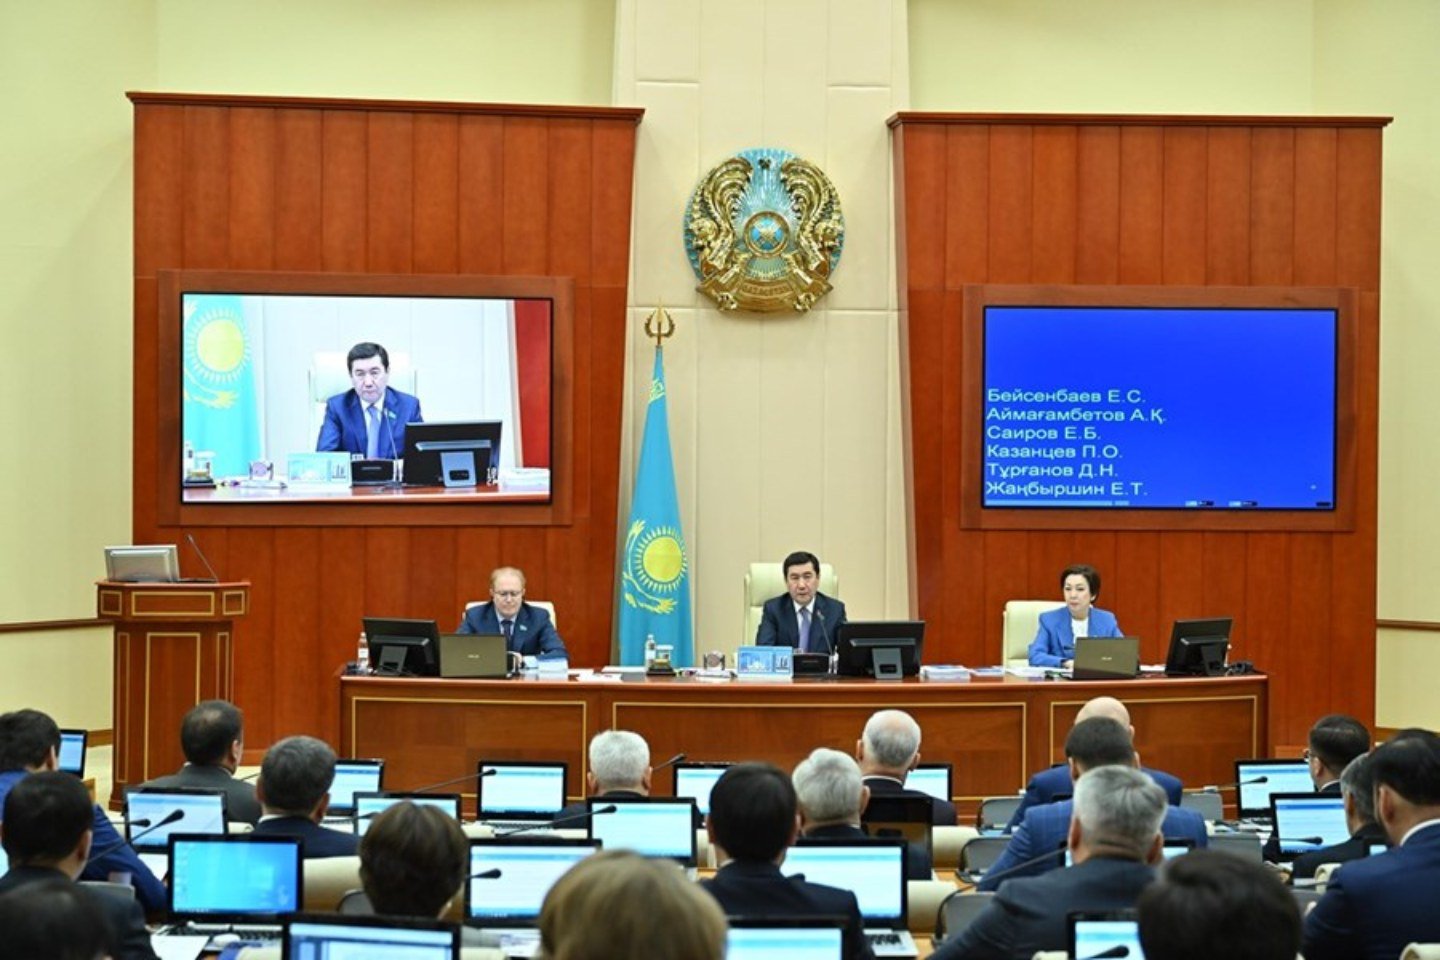 Новости Казахстана / Общество в Казахстане / Новые обещания: завершение партийного сезона обсуждают в Казахстане